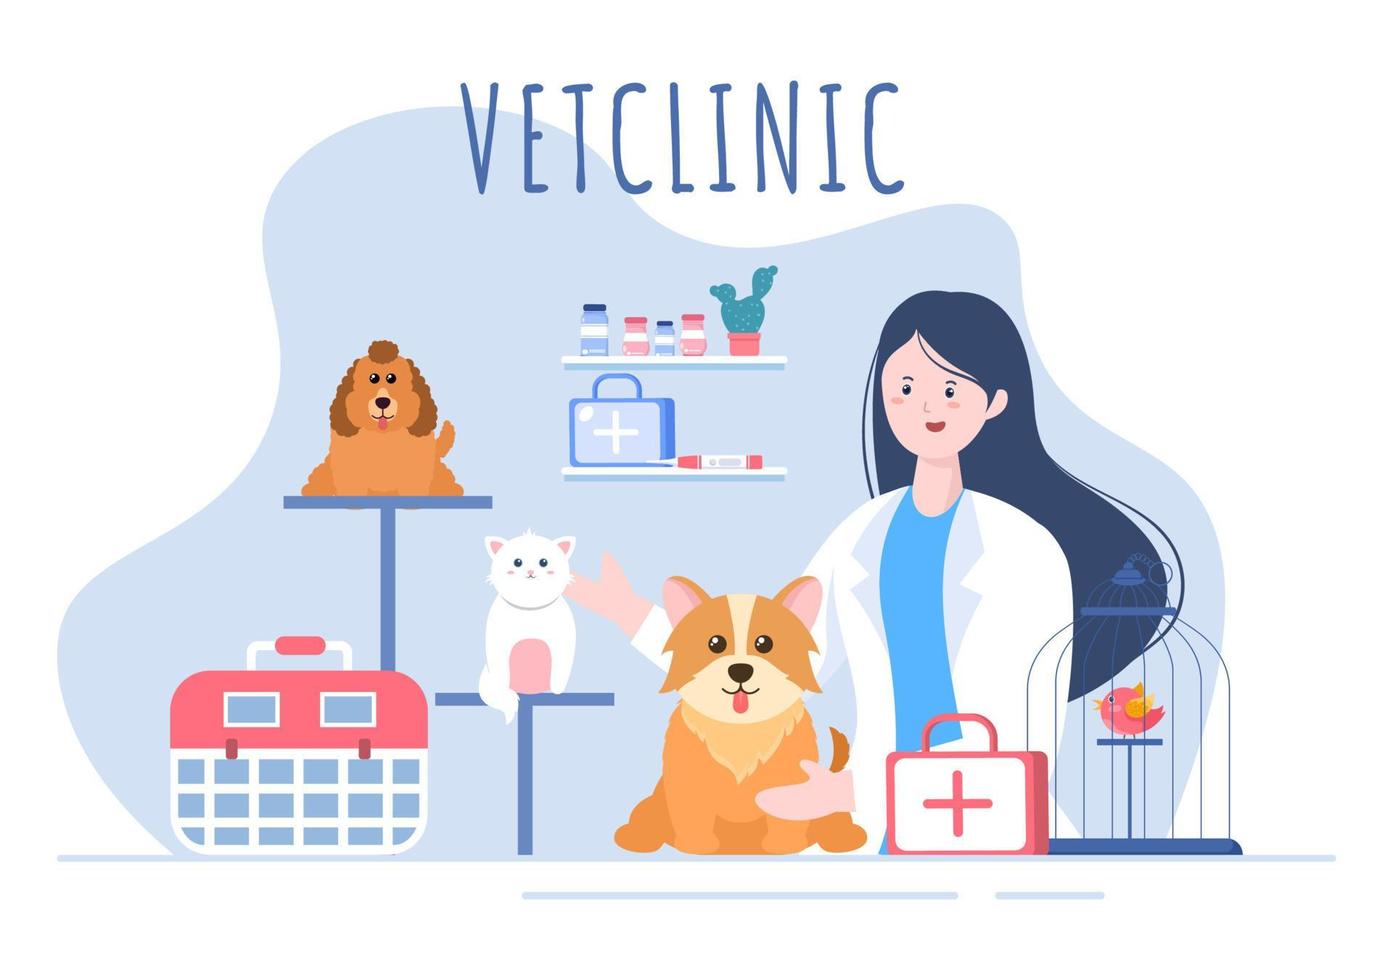 médico de la clínica veterinaria que examina, vacuna y atención médica para mascotas como perros y gatos en caricaturas planas ilustración vectorial de fondo para afiches o pancartas vector